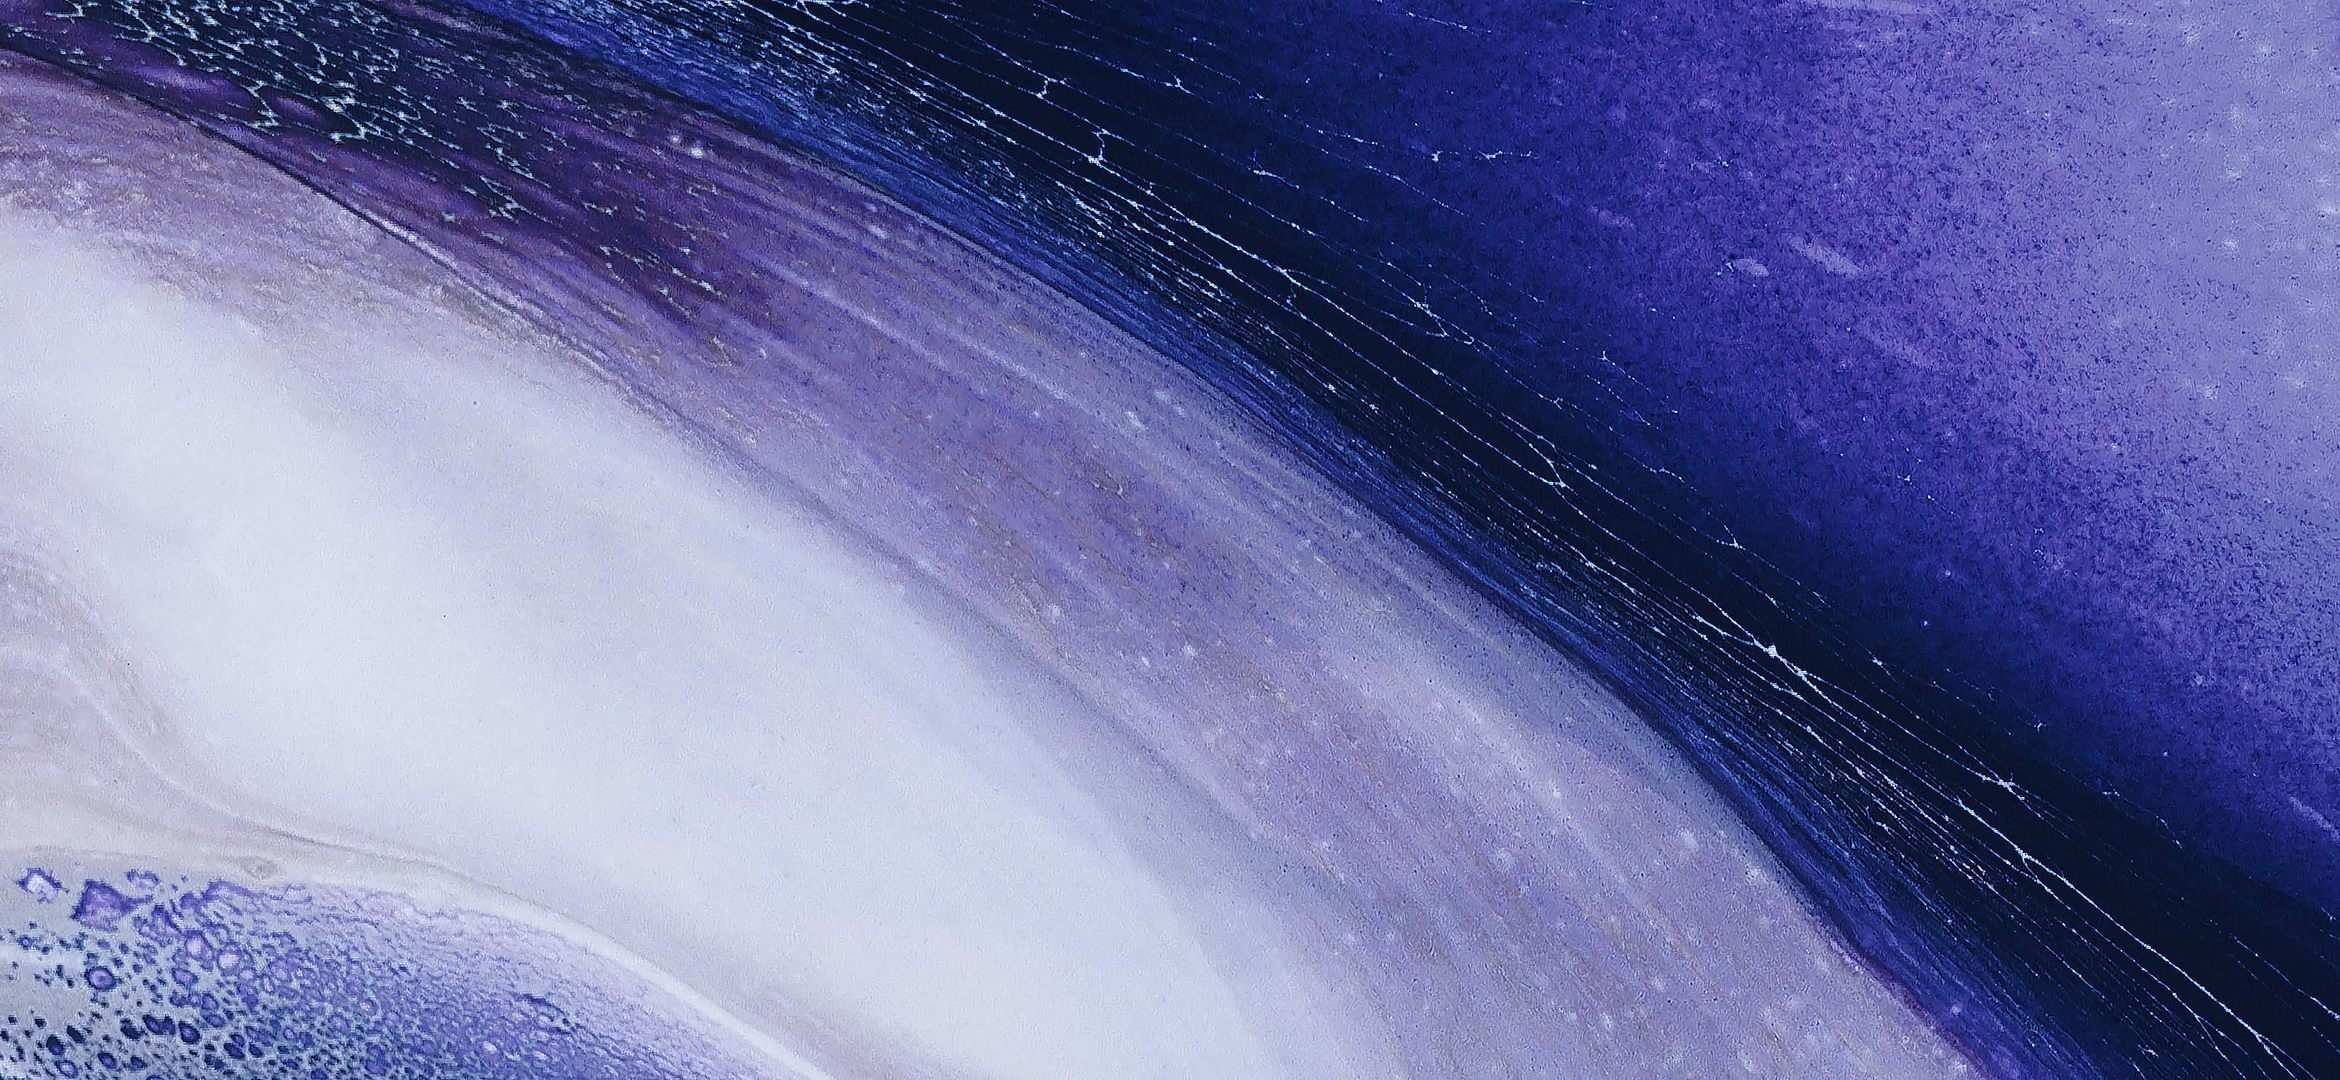 General 2340x1080 digital art texture liquid artwork abstract violet